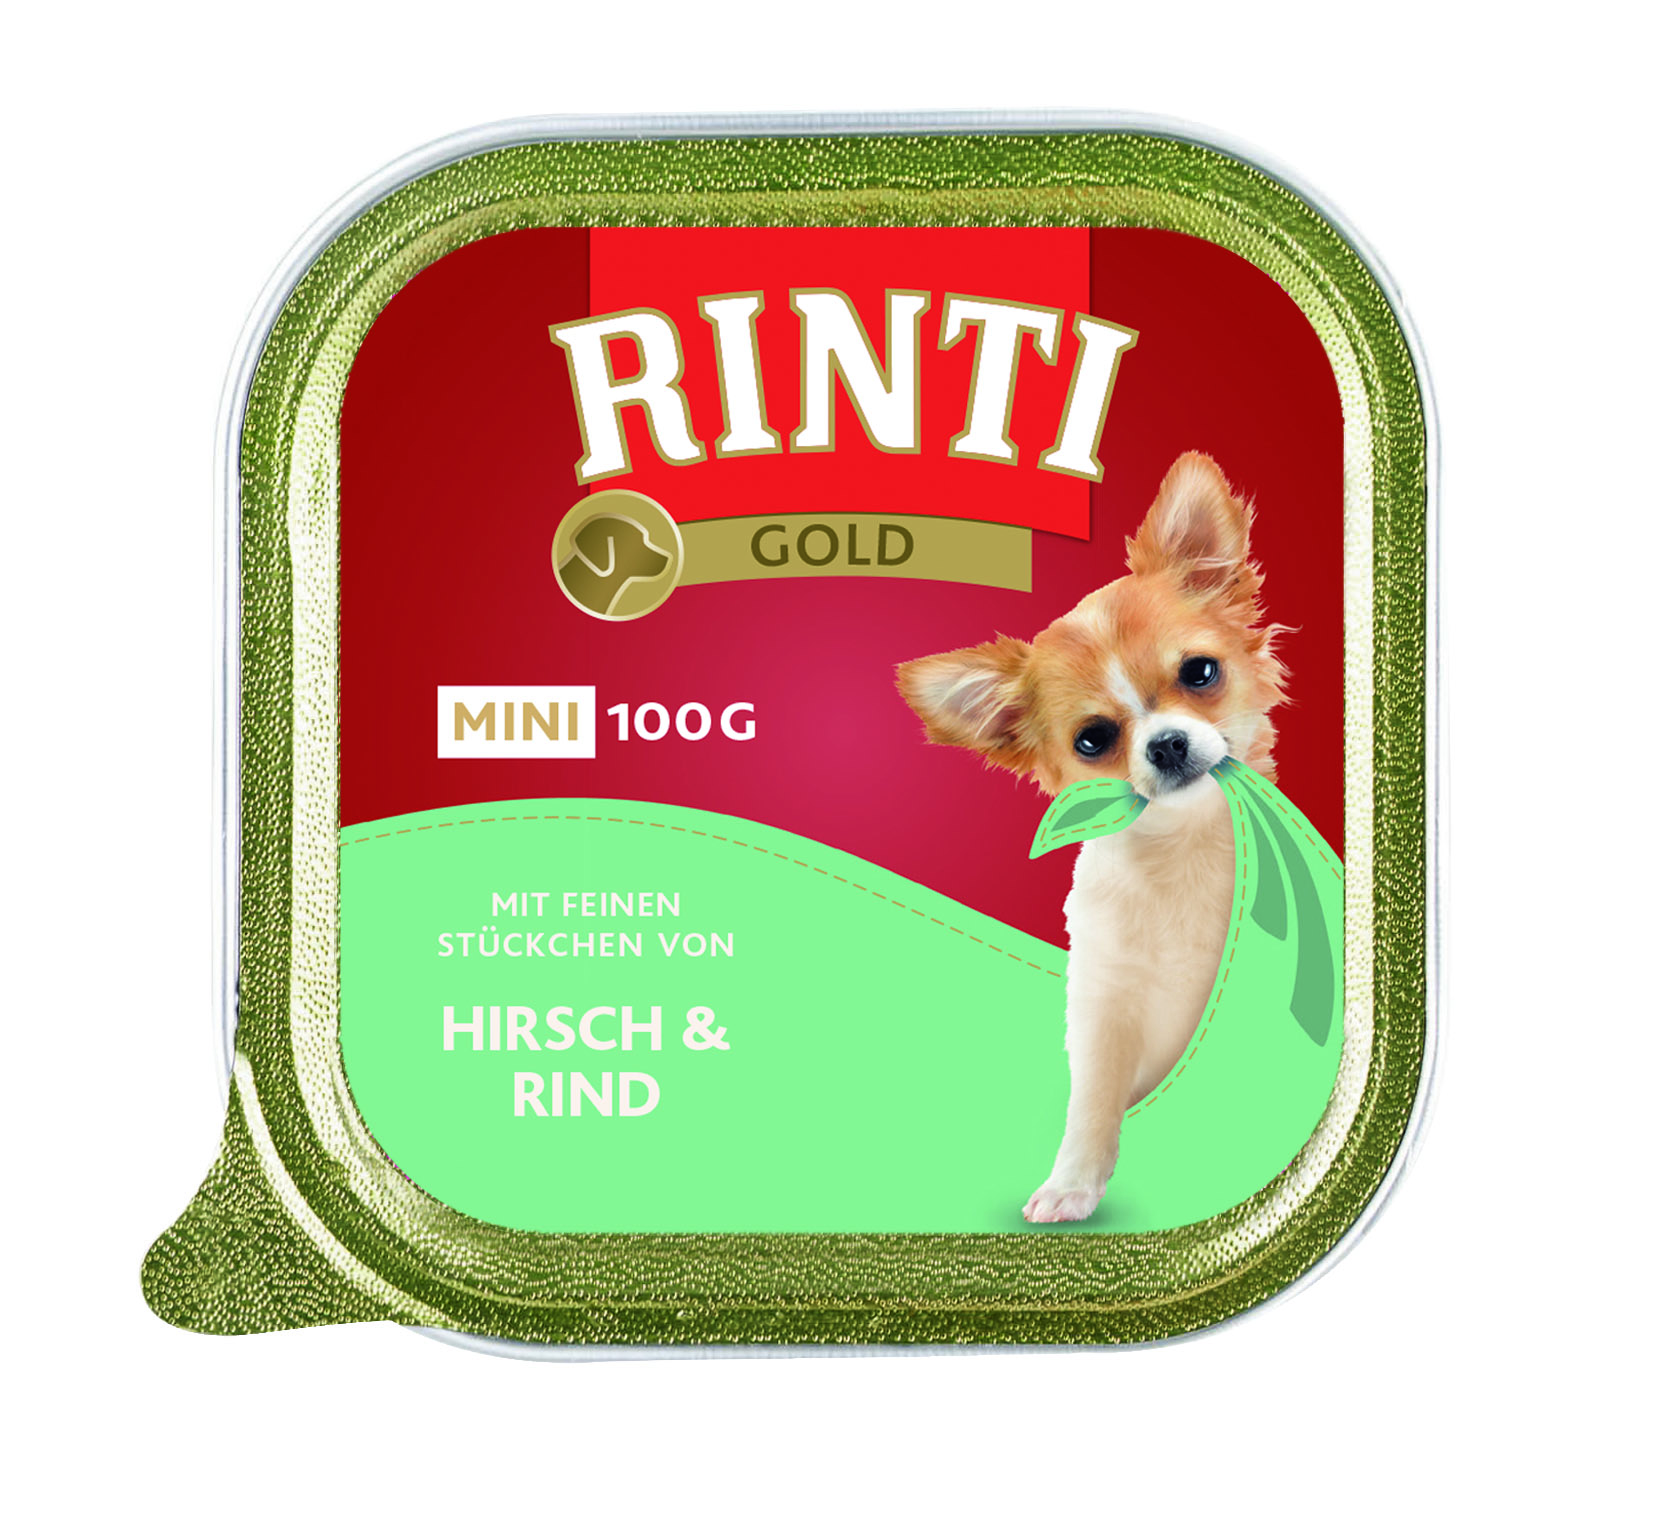 Rinti Gold mini Huhn & Gans 100g